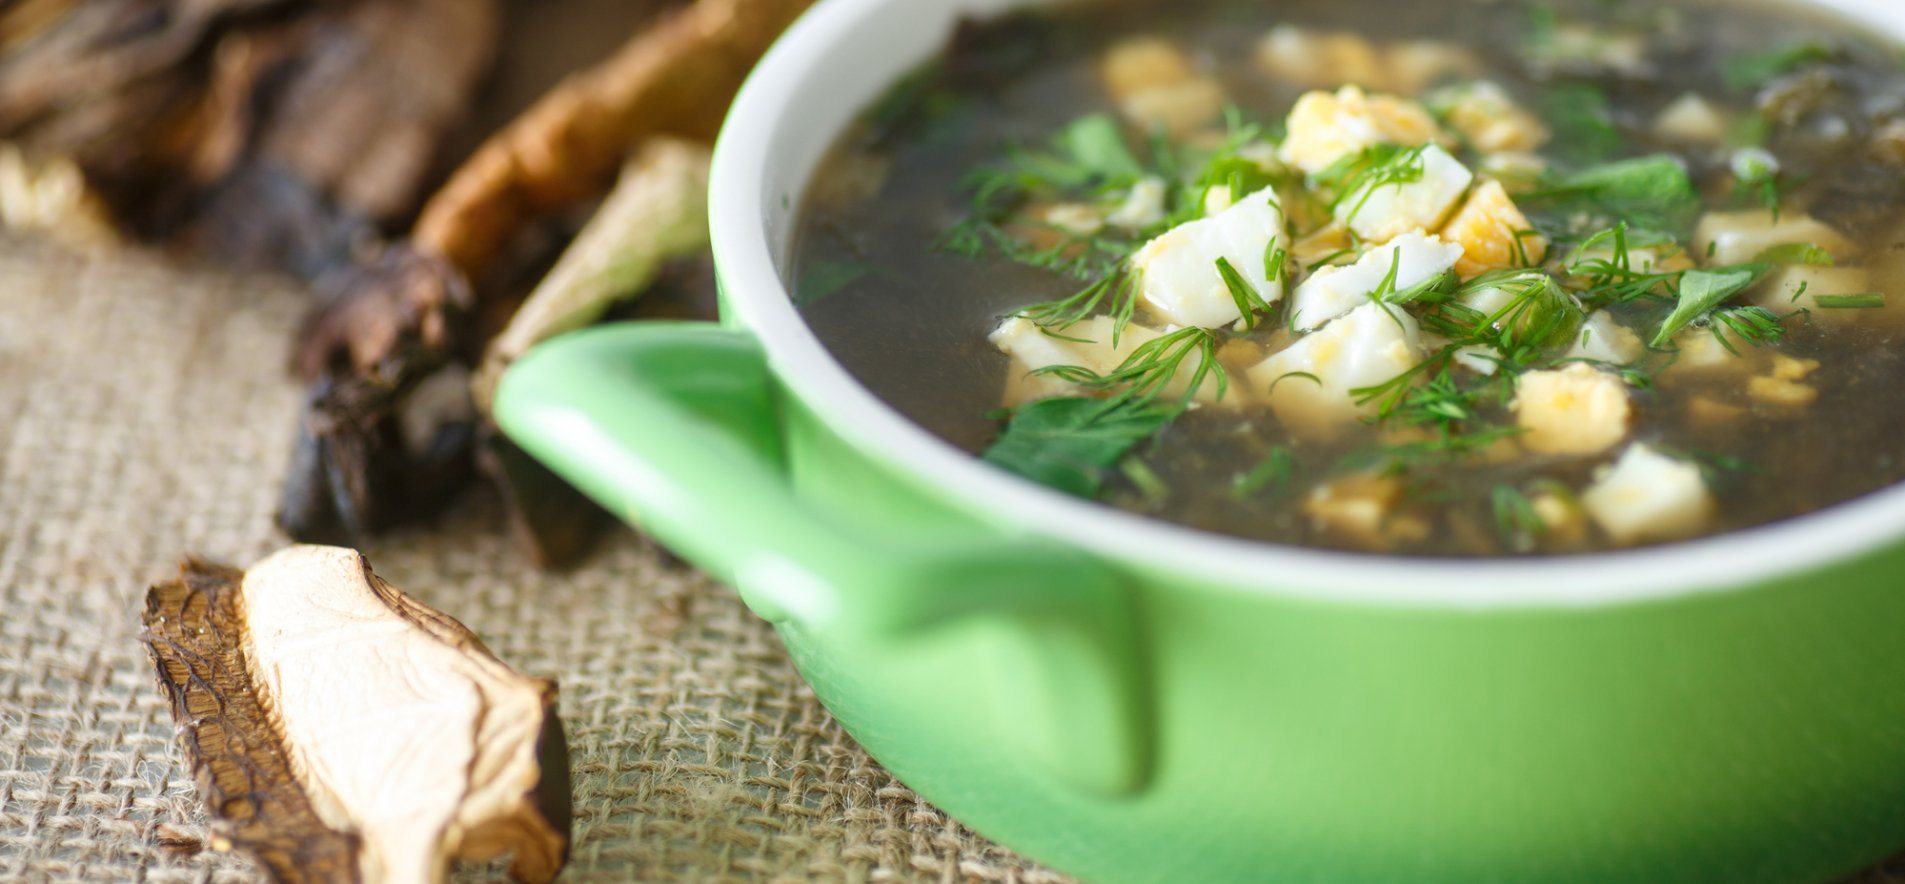 Суп из сушёных грибов с домашней лапшой — рецепт с фото и видео